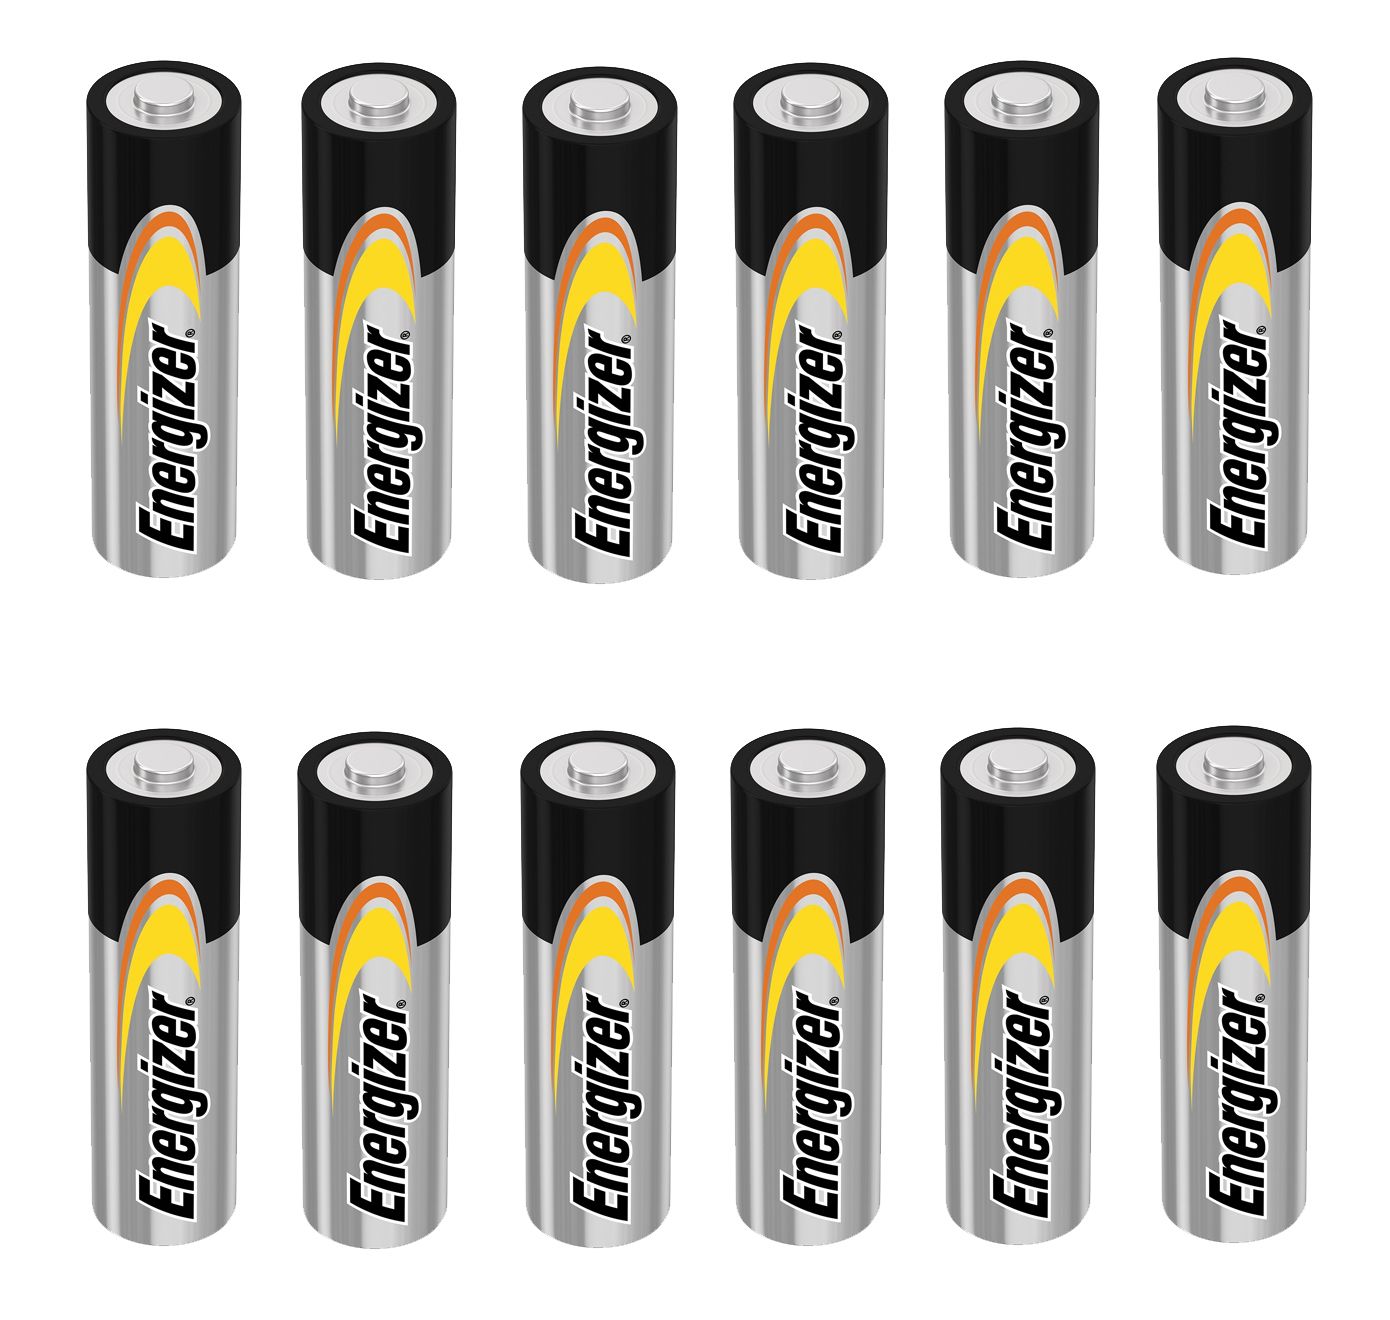 Energizer Alkaline 1.5V AA batteries - 12 Pack